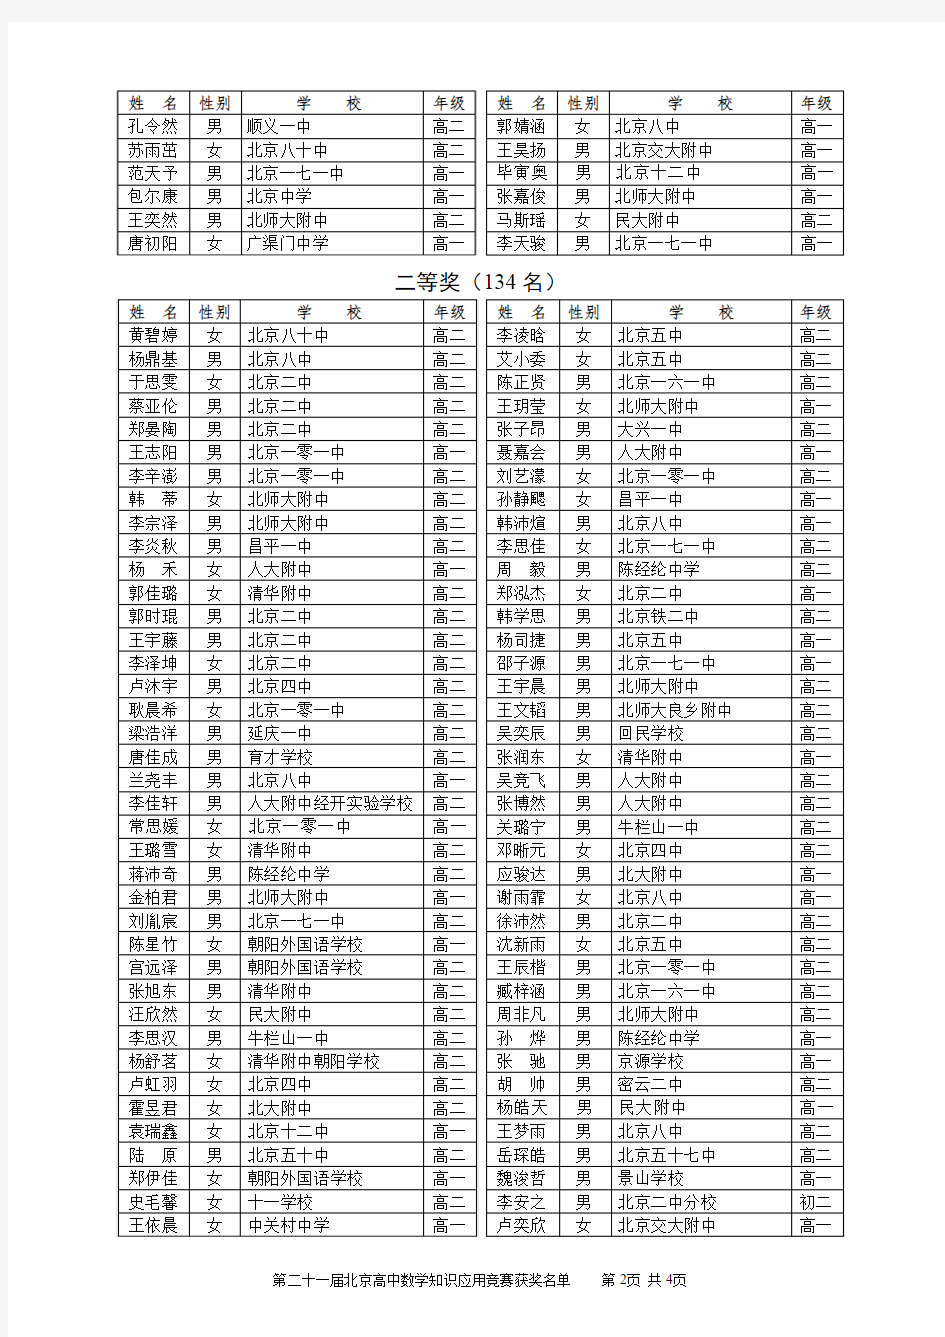 二十一届北京高中数学知识应用竞赛获奖名单